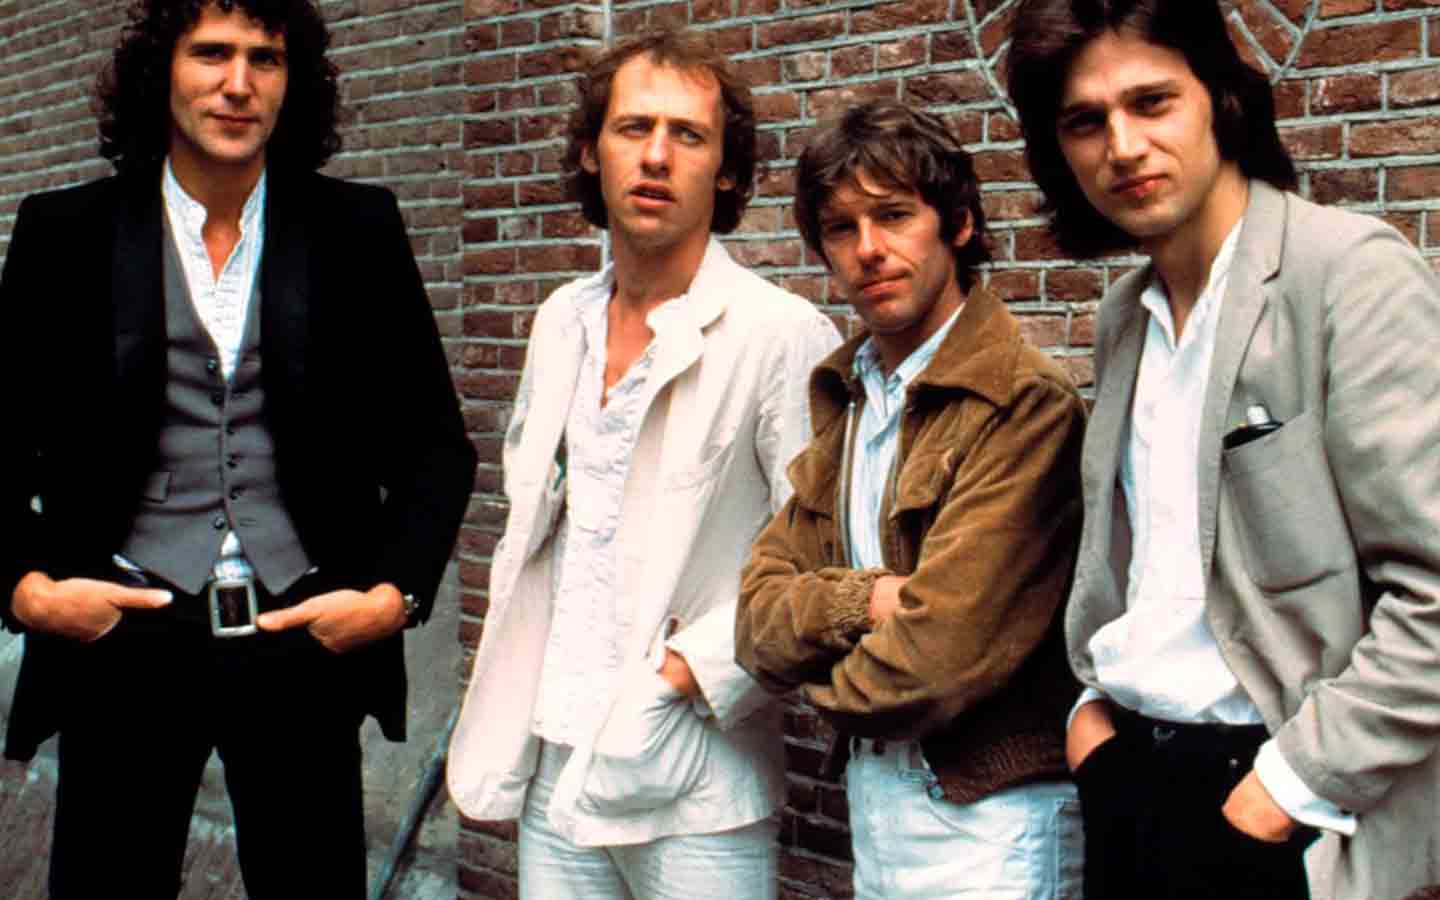 El bajista de Dire Straits revela que han recibido ofertas astronómicas para un posible regreso del grupo